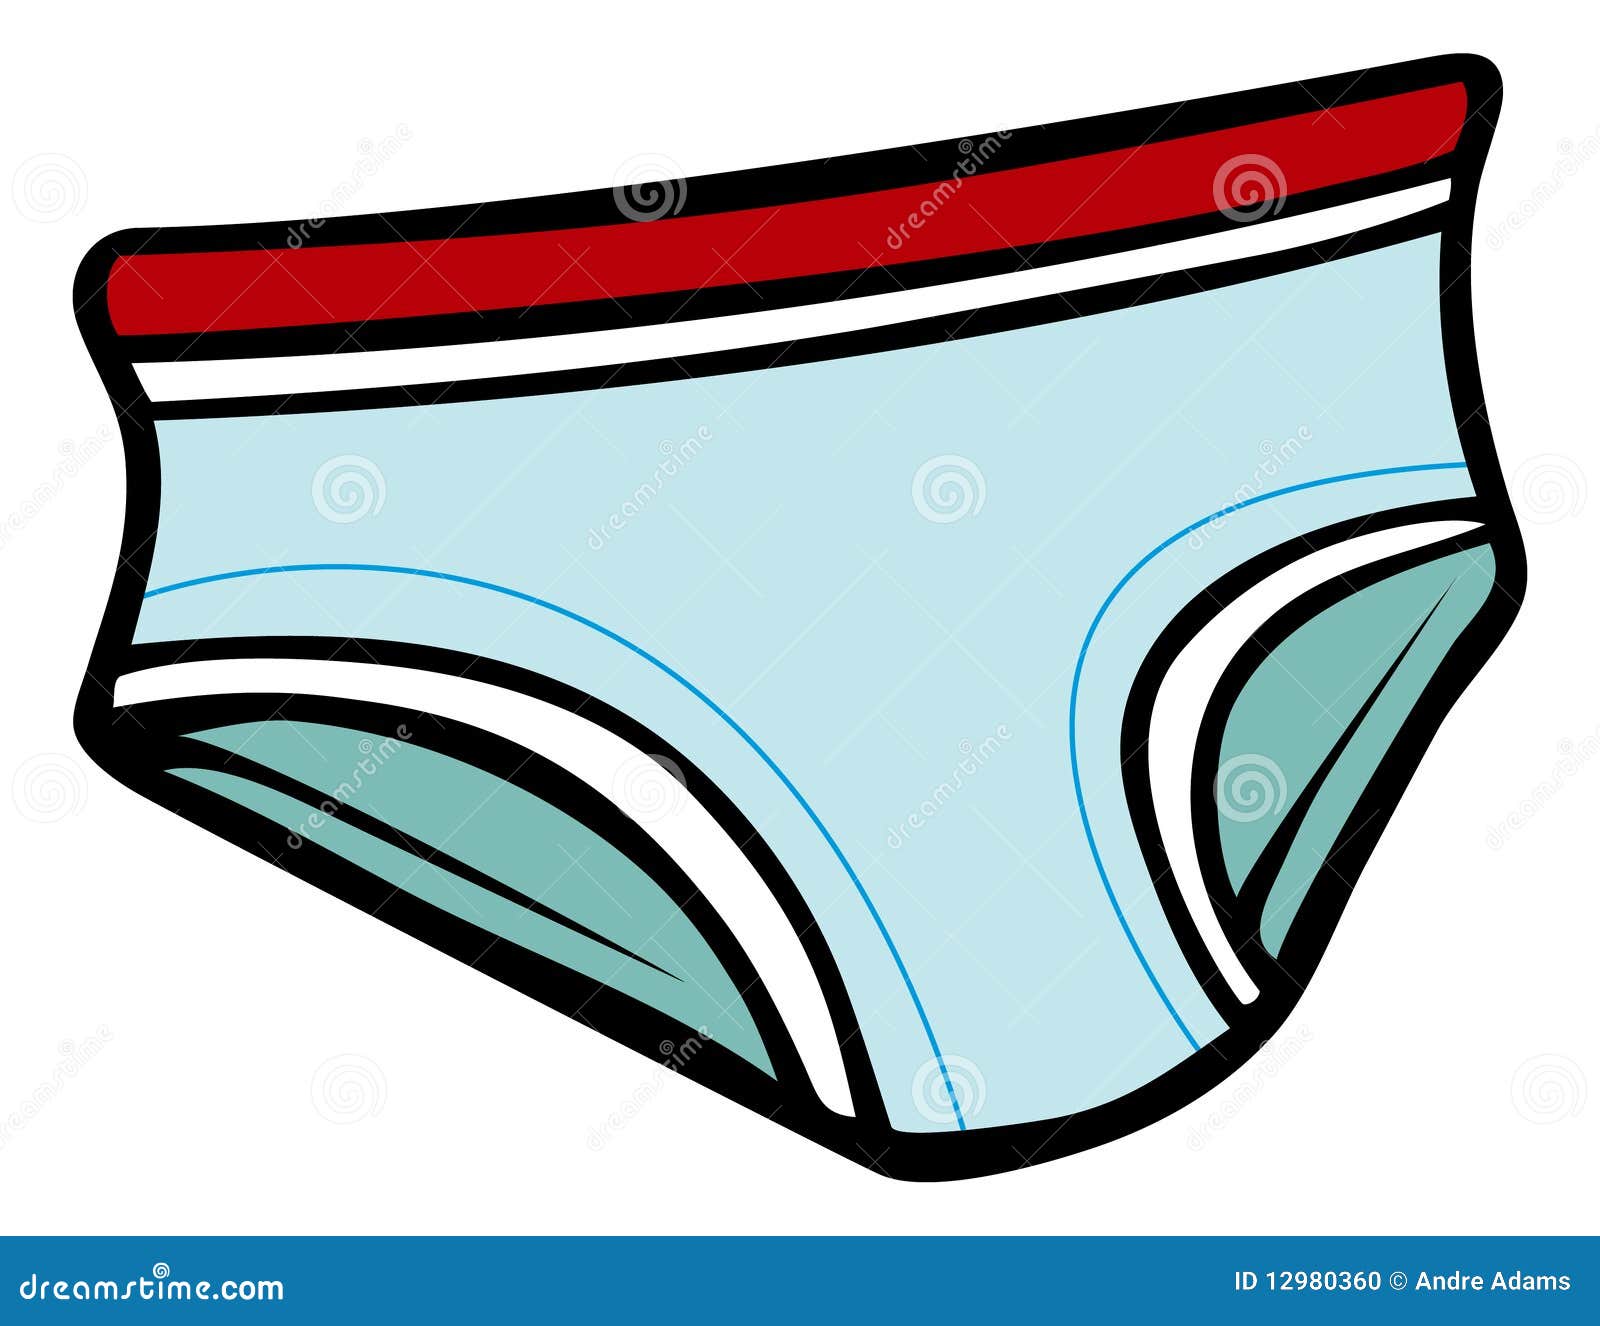 girl underwear clipart - photo #35